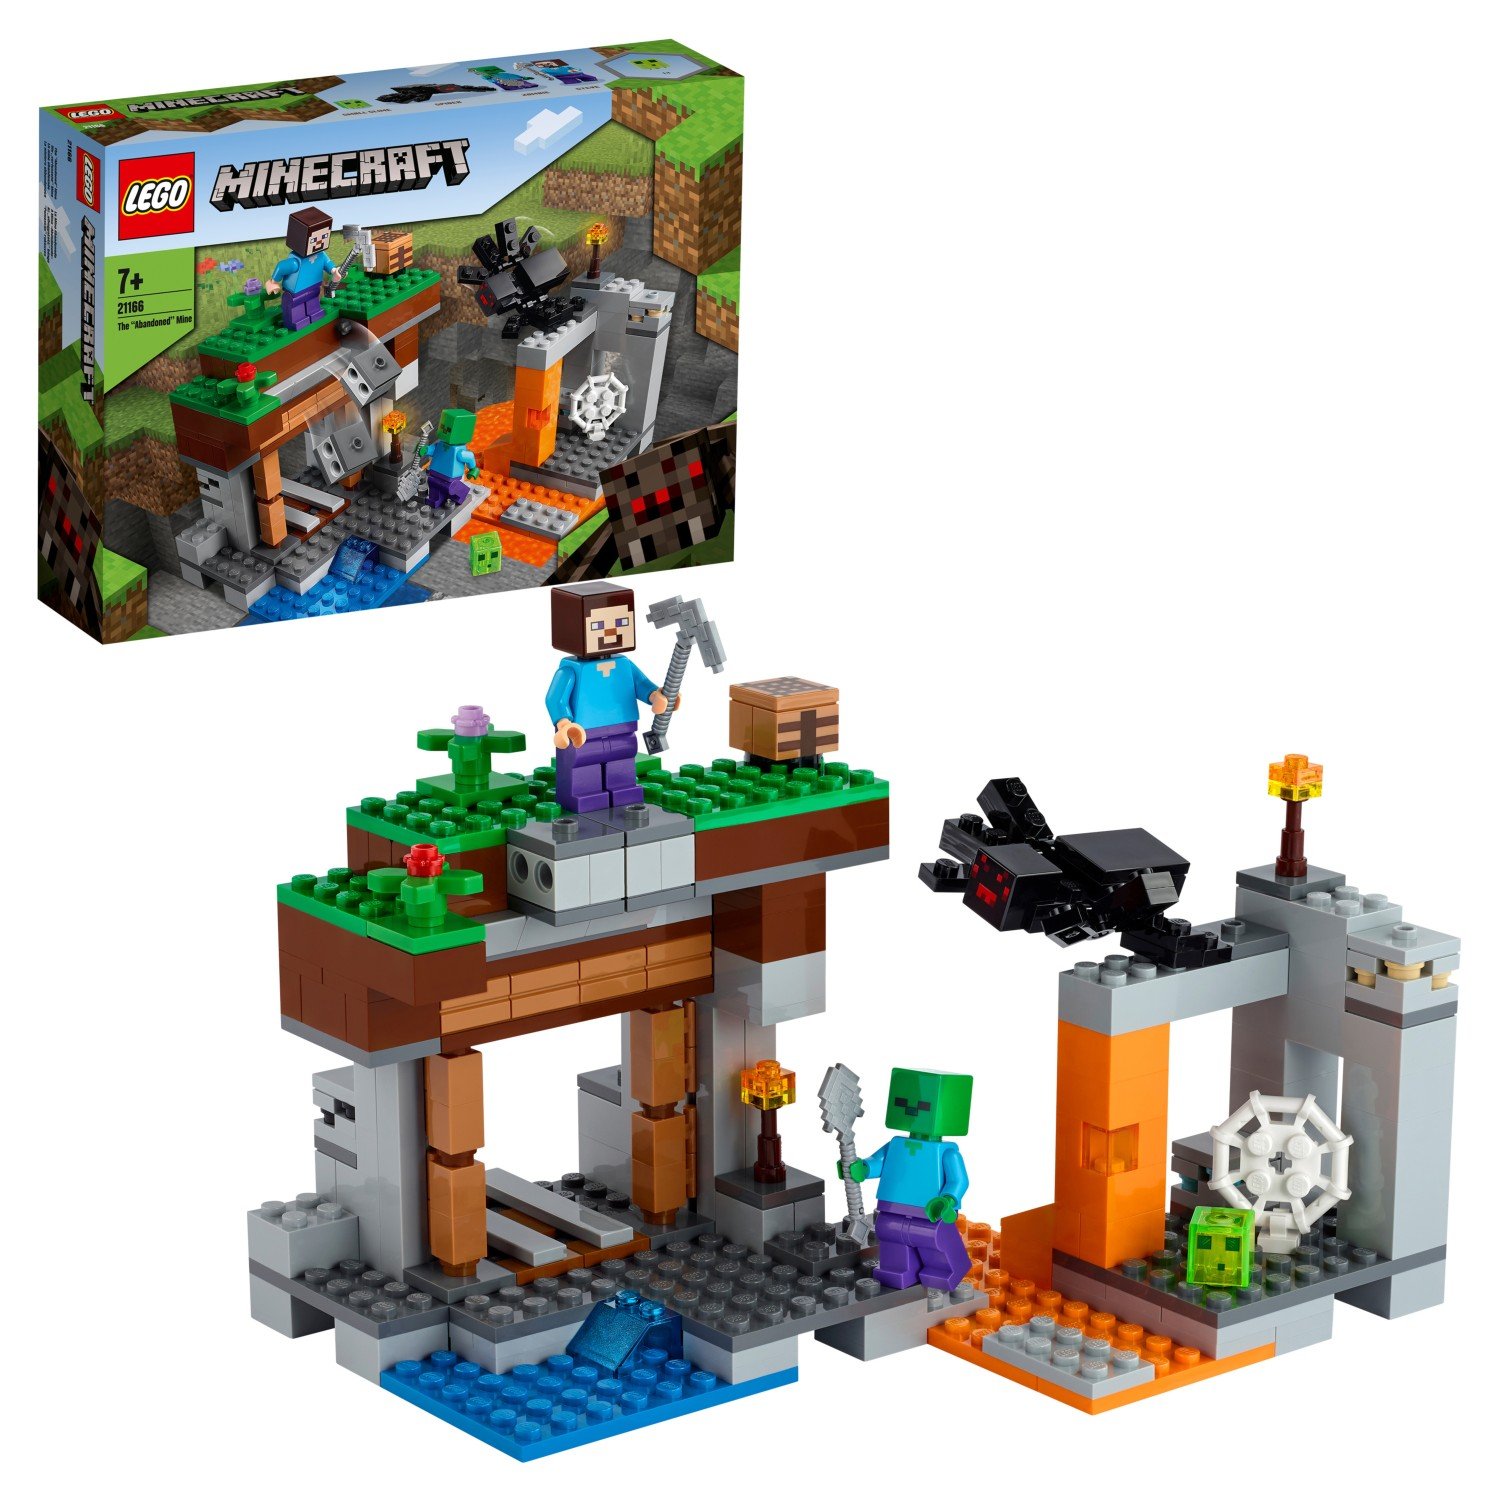 Конструктор LEGO Minecraft 21166 Заброшенная шахта